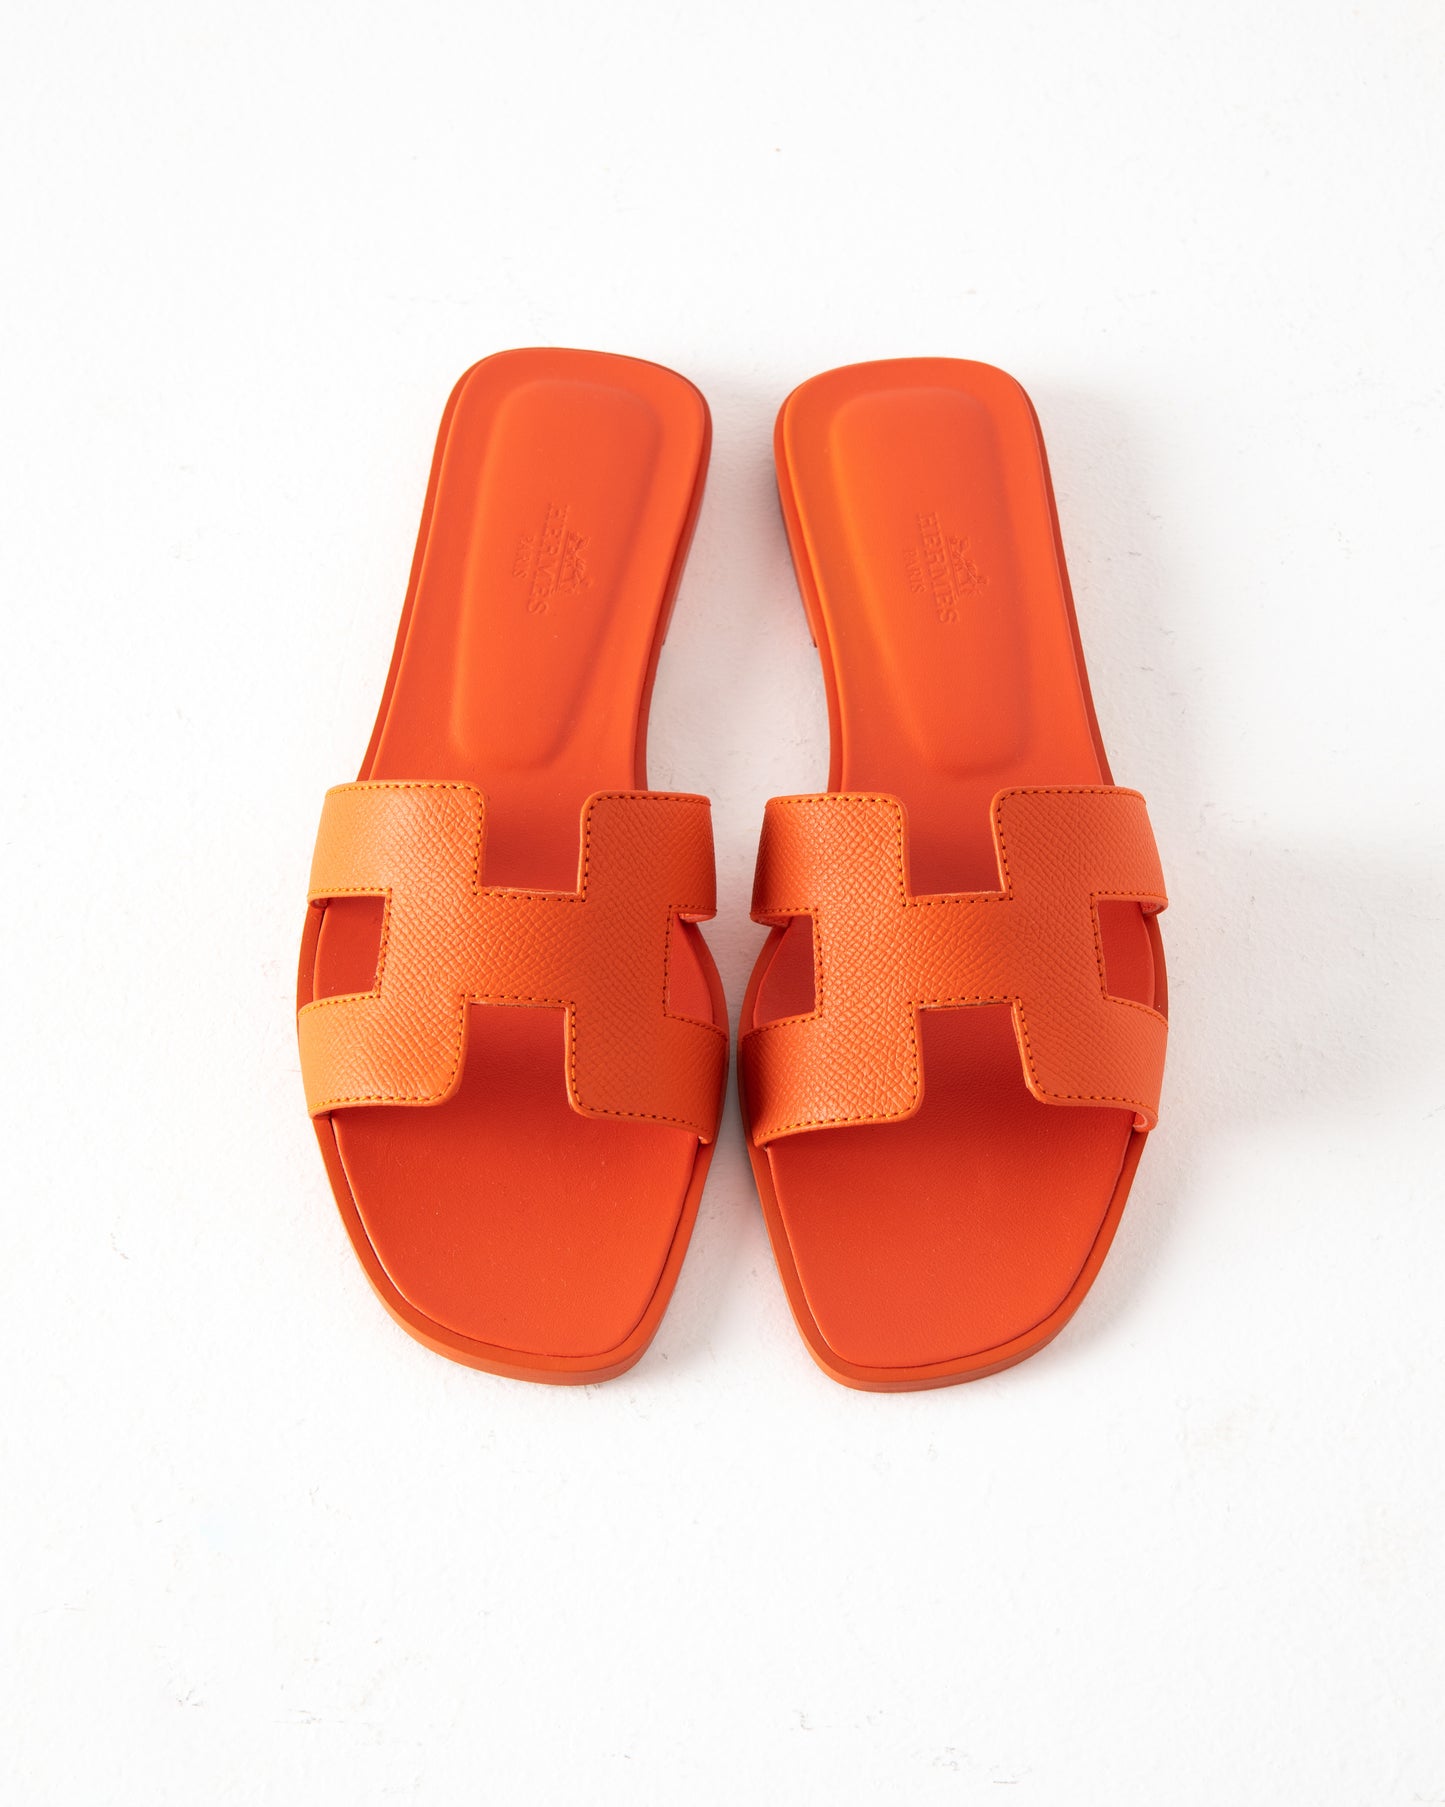 Oran Sandal in Epsom Orange